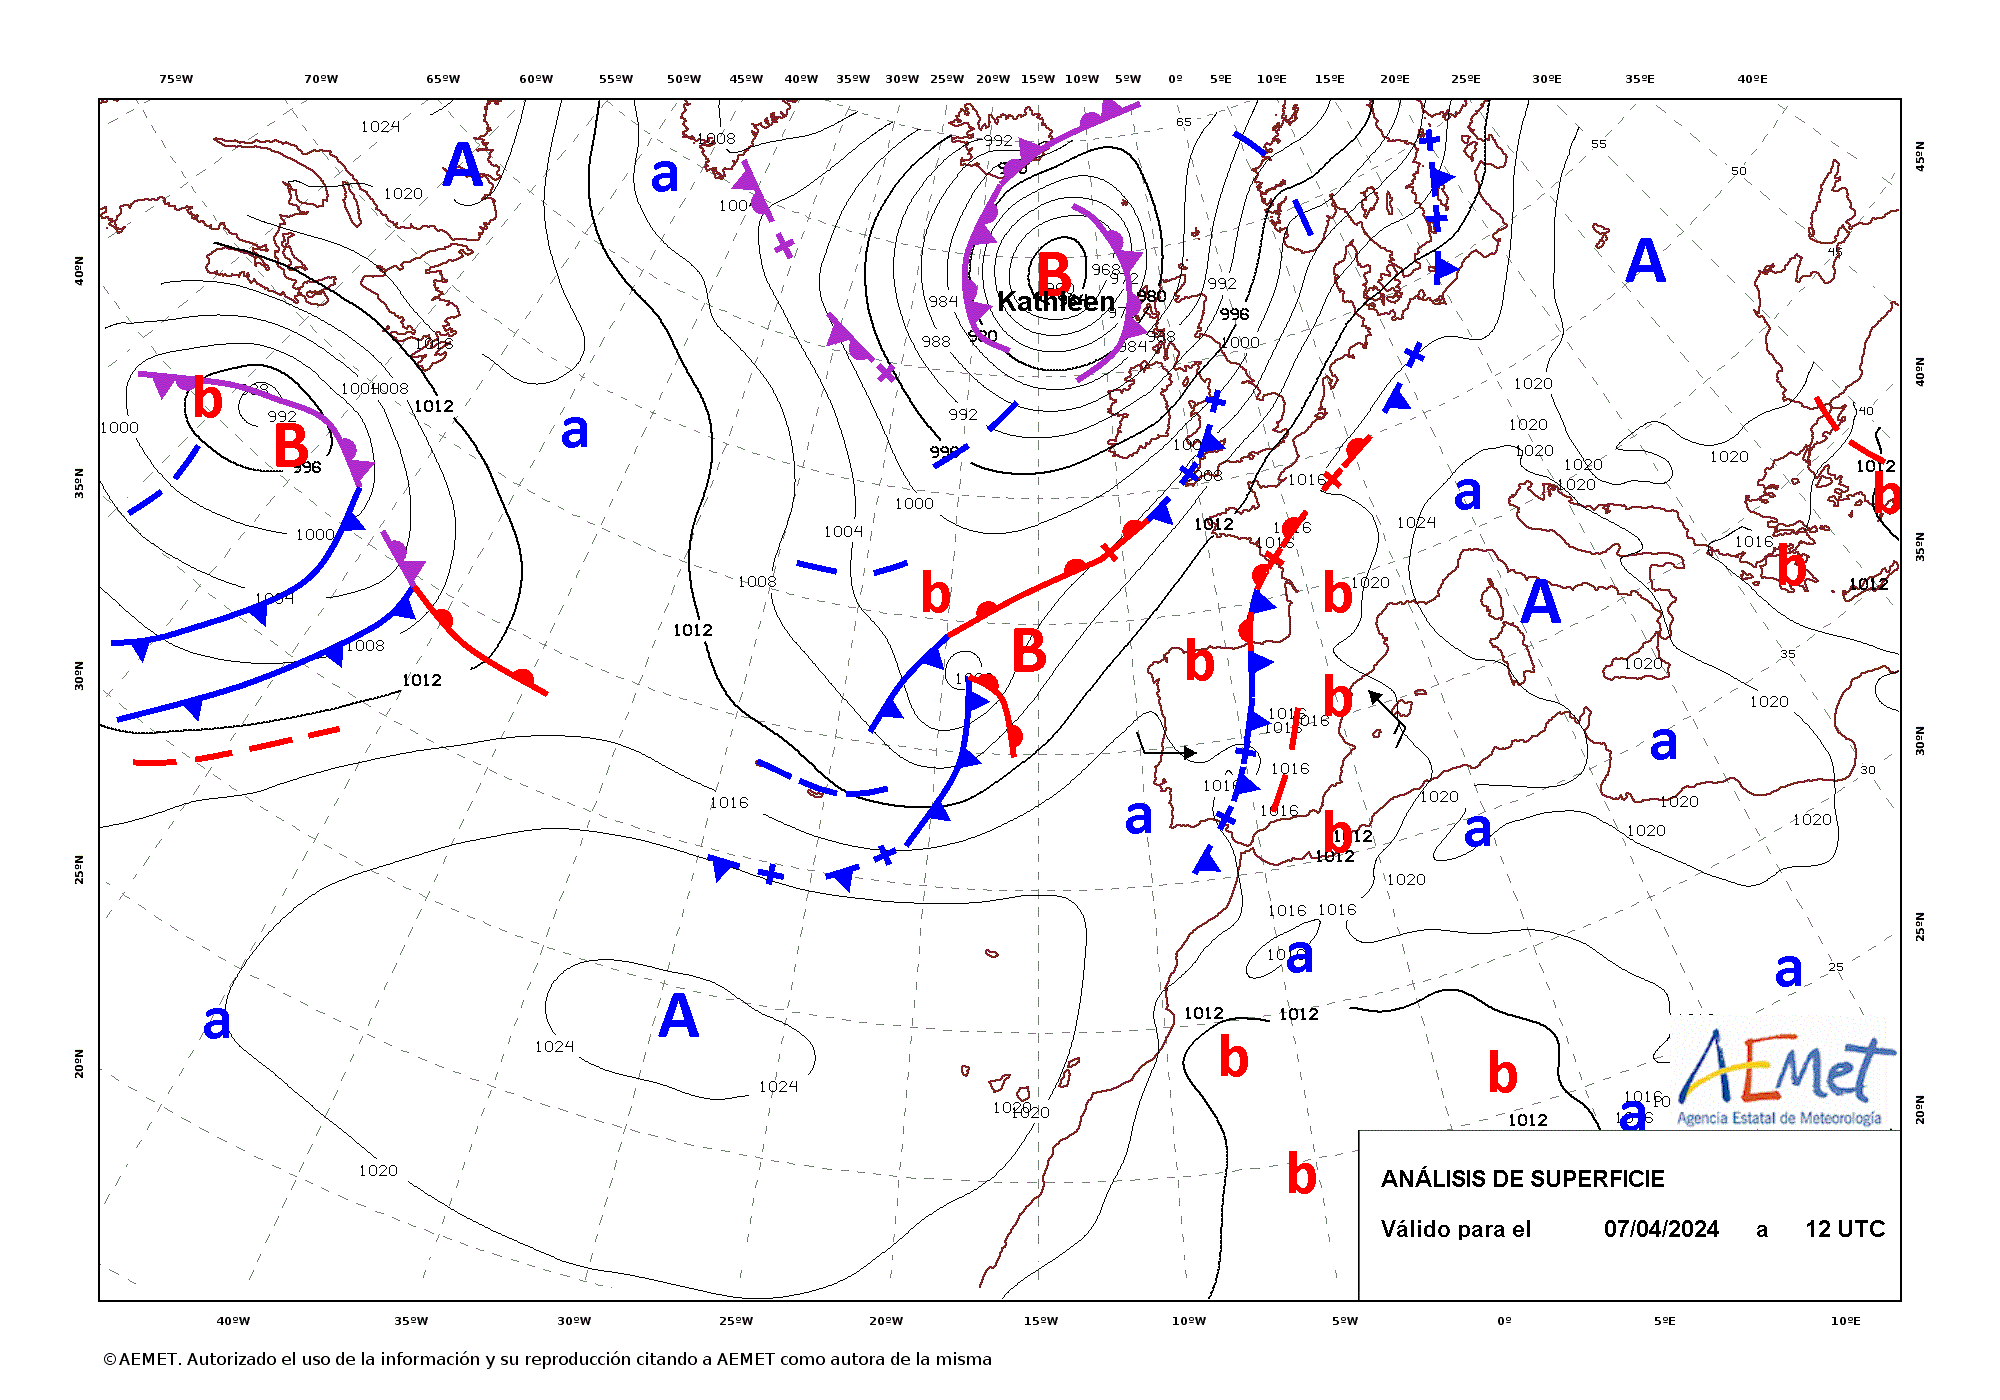 Evolución de Pierrick entre las 12 UTC del día 7 de abril y la misma hora del día 10 (análisis cada 24 horas).